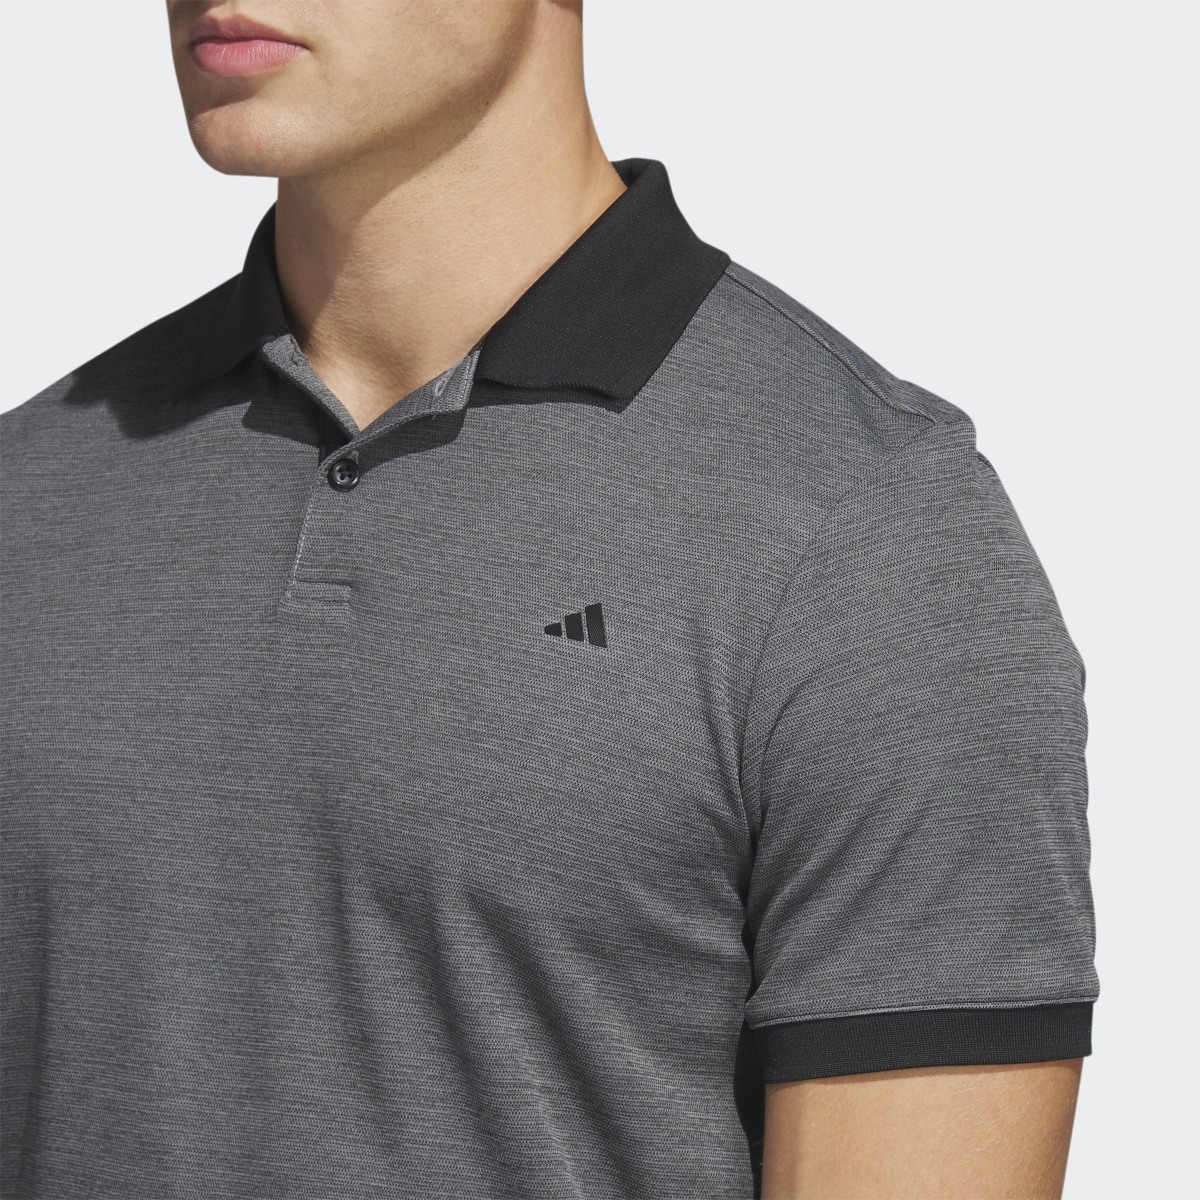 Adidas Ultimate365 No-Show Golf Polo Shirt. 6